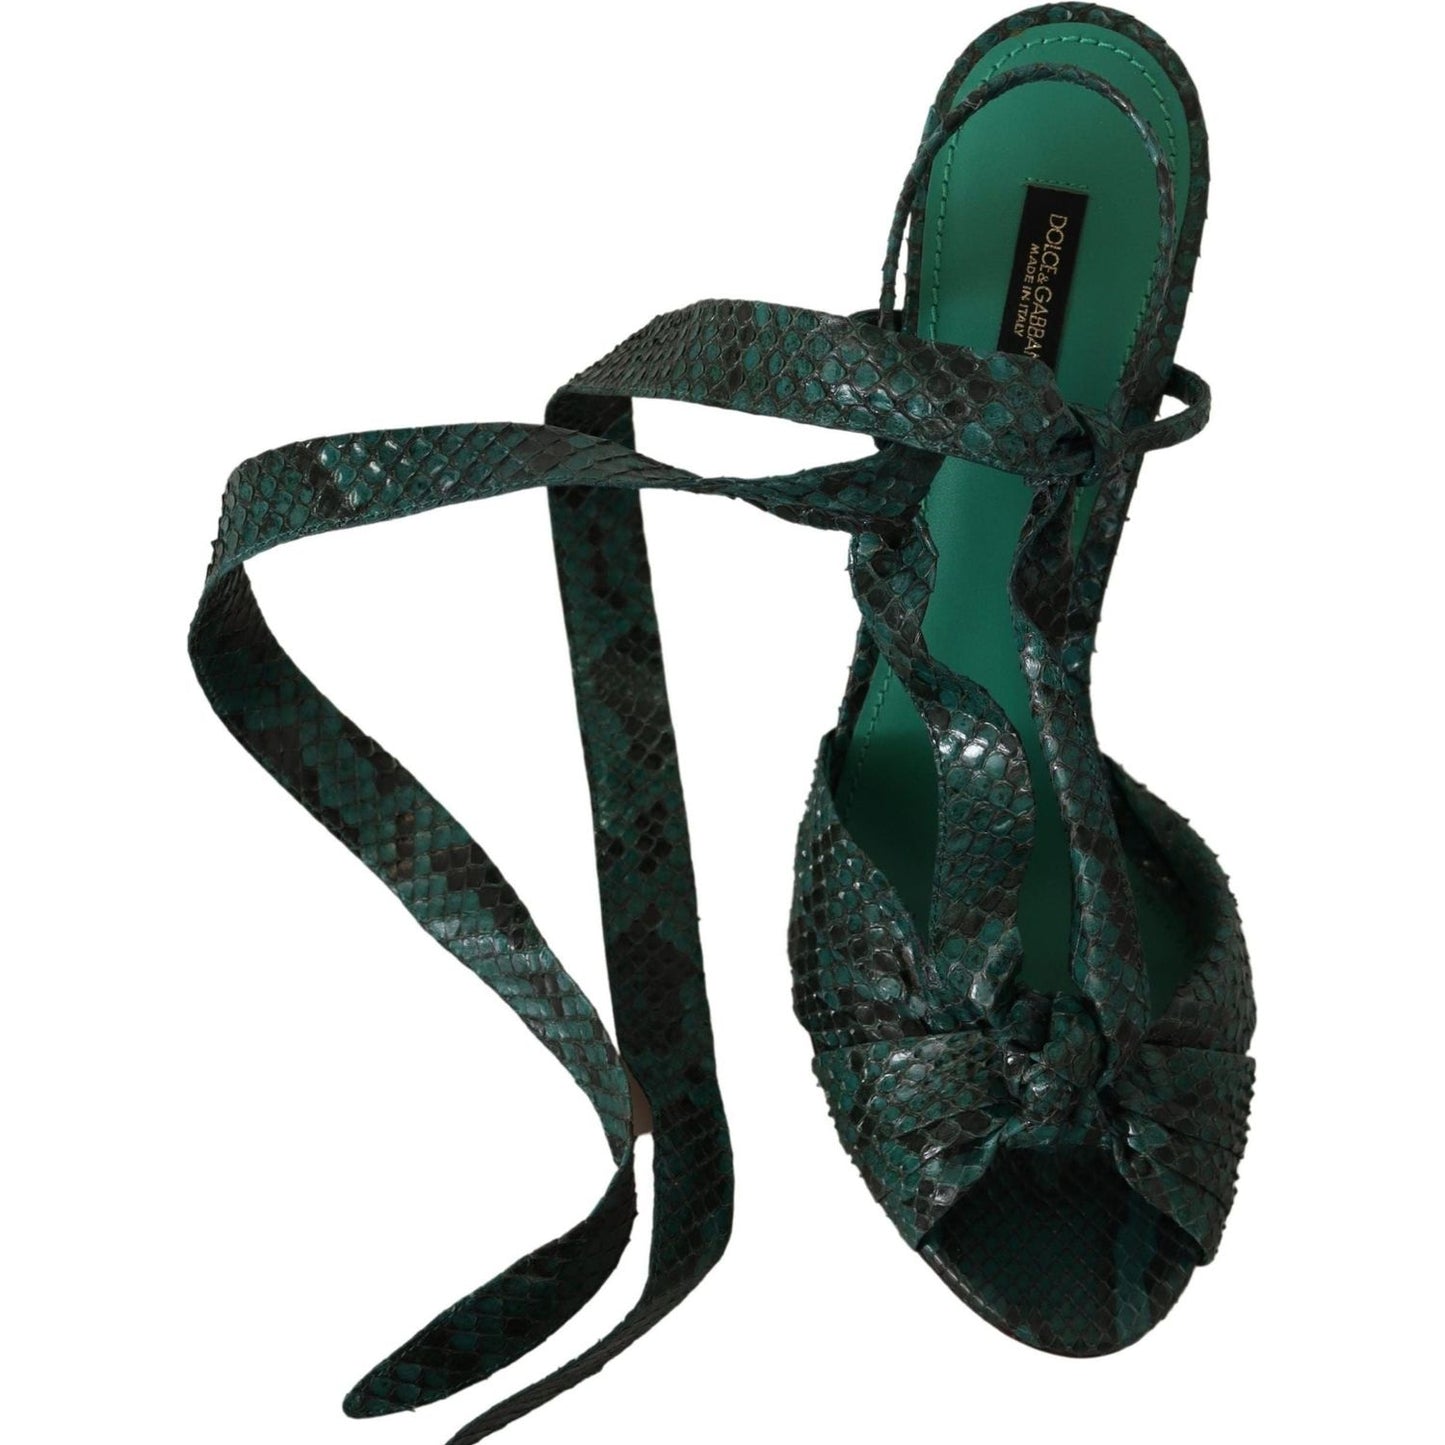 Dolce & Gabbana Elegant Green Python Strappy Heels green-python-strap-sandals-heels-shoes IMG_0365-scaled-353e42b8-3c2.jpg